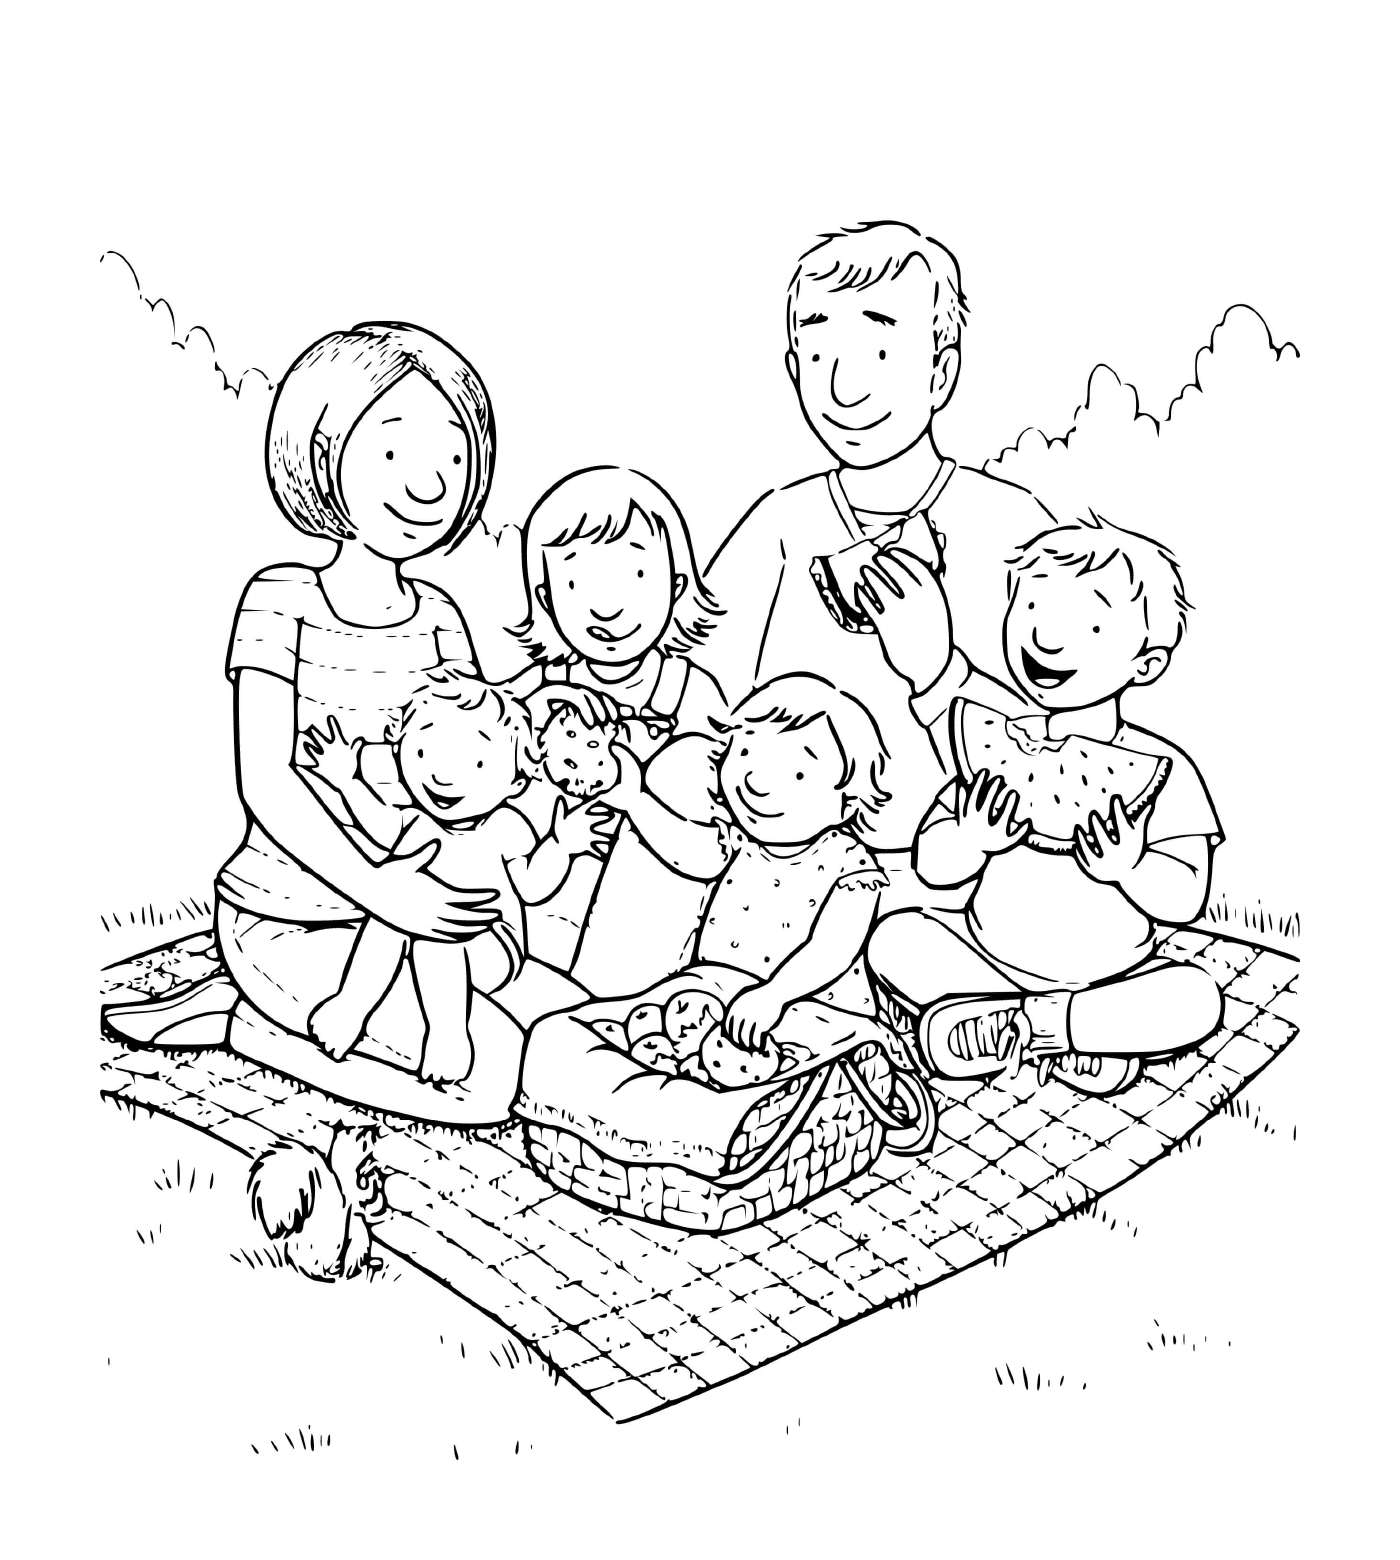  Семья из четырёх детей устраивает пикник на одеяле в траве 